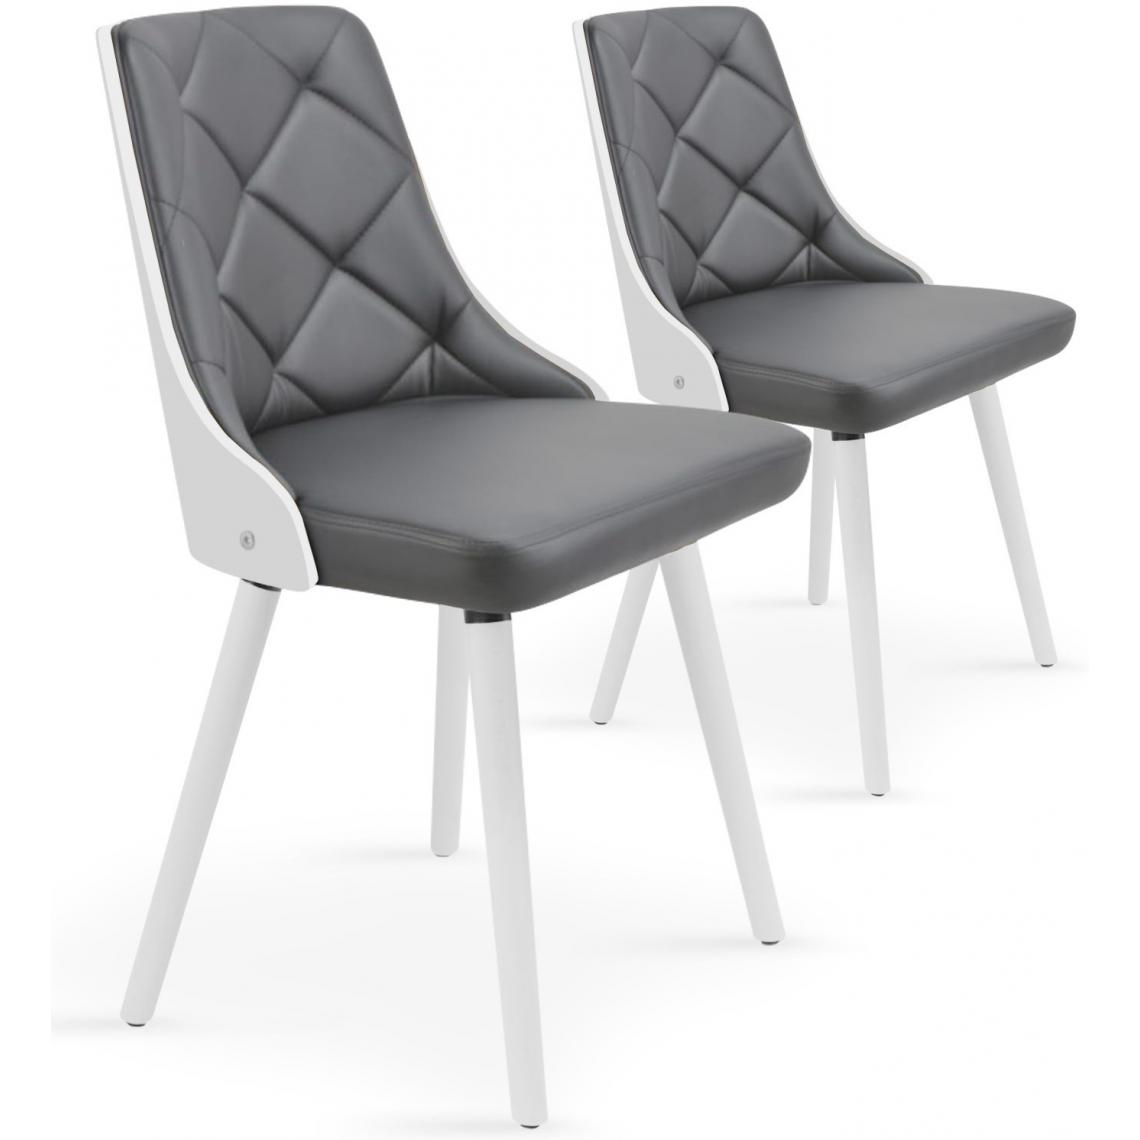 3S. x Home - Lot de 2 chaises scandinave blanc et gris HADRA - Chaises